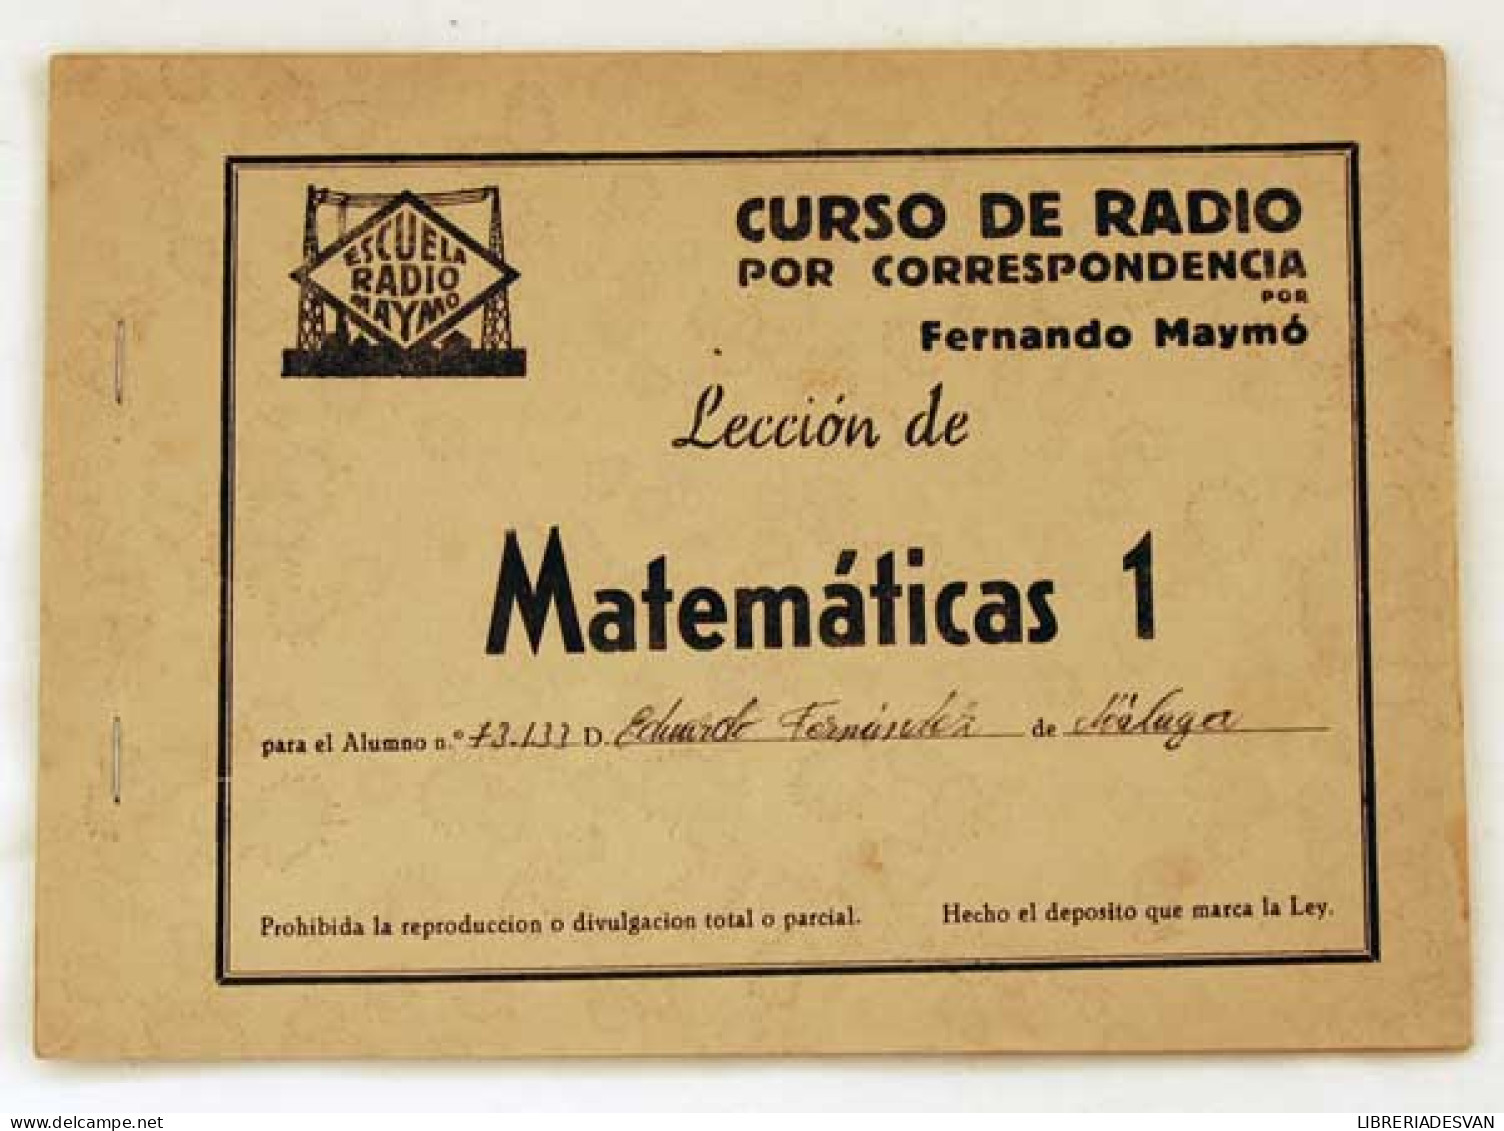 Curso De Radio Por Correspondencia. Lección Matemáticas 1. Fernando Maymó - Craft, Manual Arts